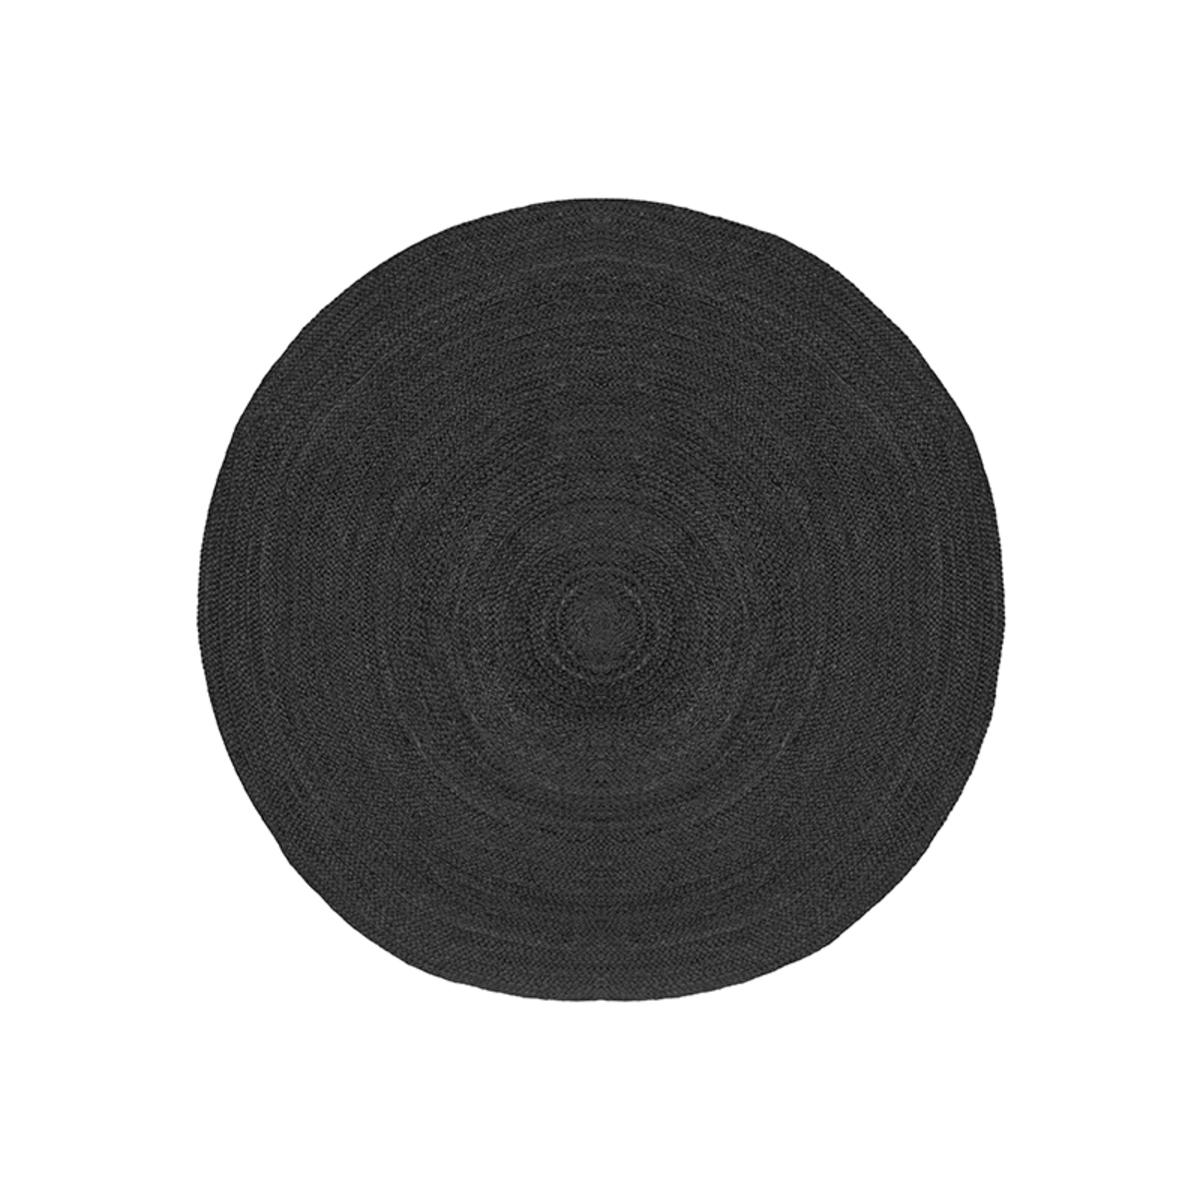  Vloerkleed Jute - Zwart - Jute - 120 cm afbeelding 1